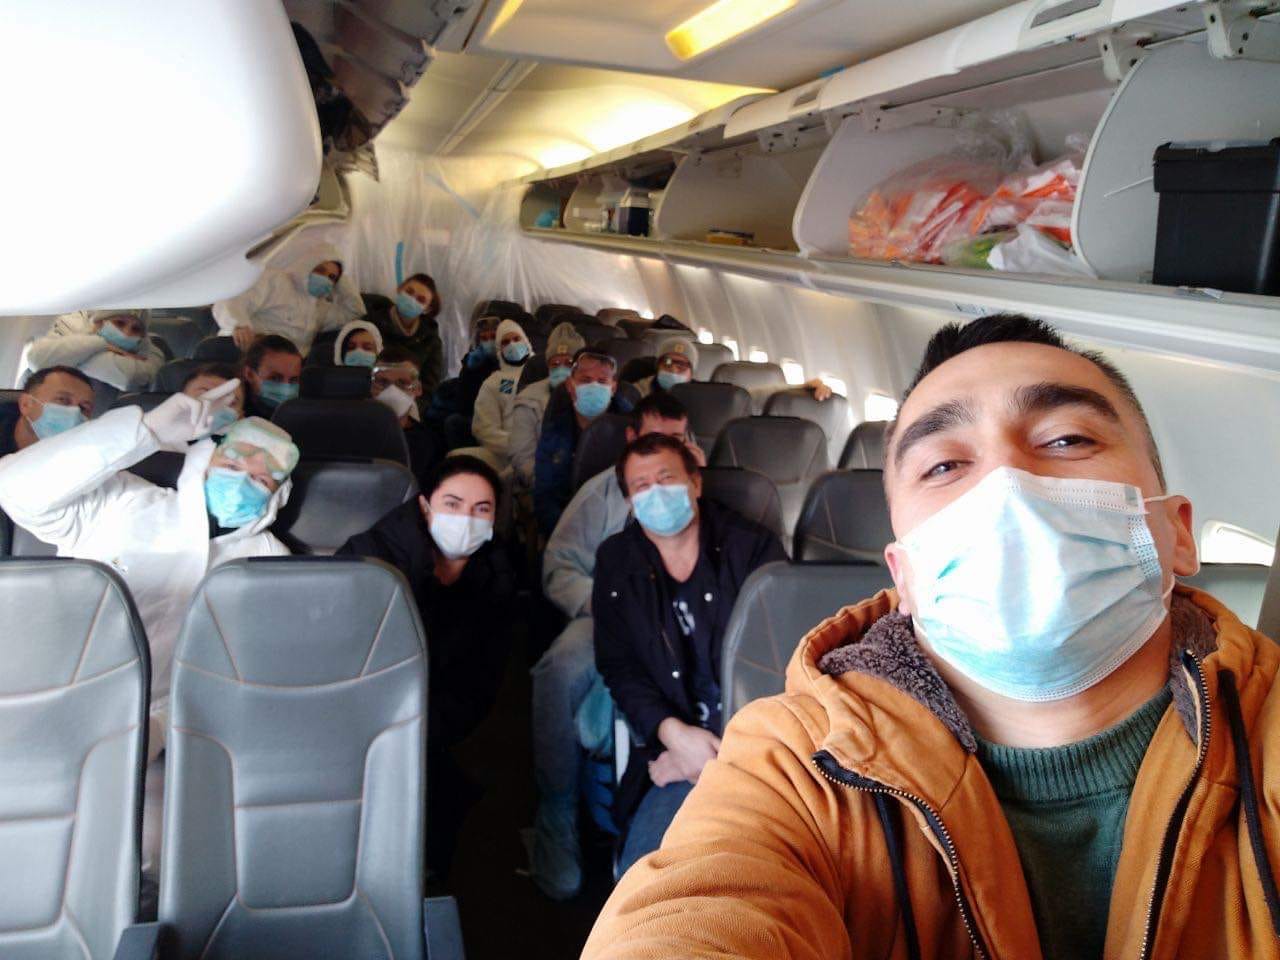 В українців евакуйованих з Китаю не виявили коронавірусу — МОЗ